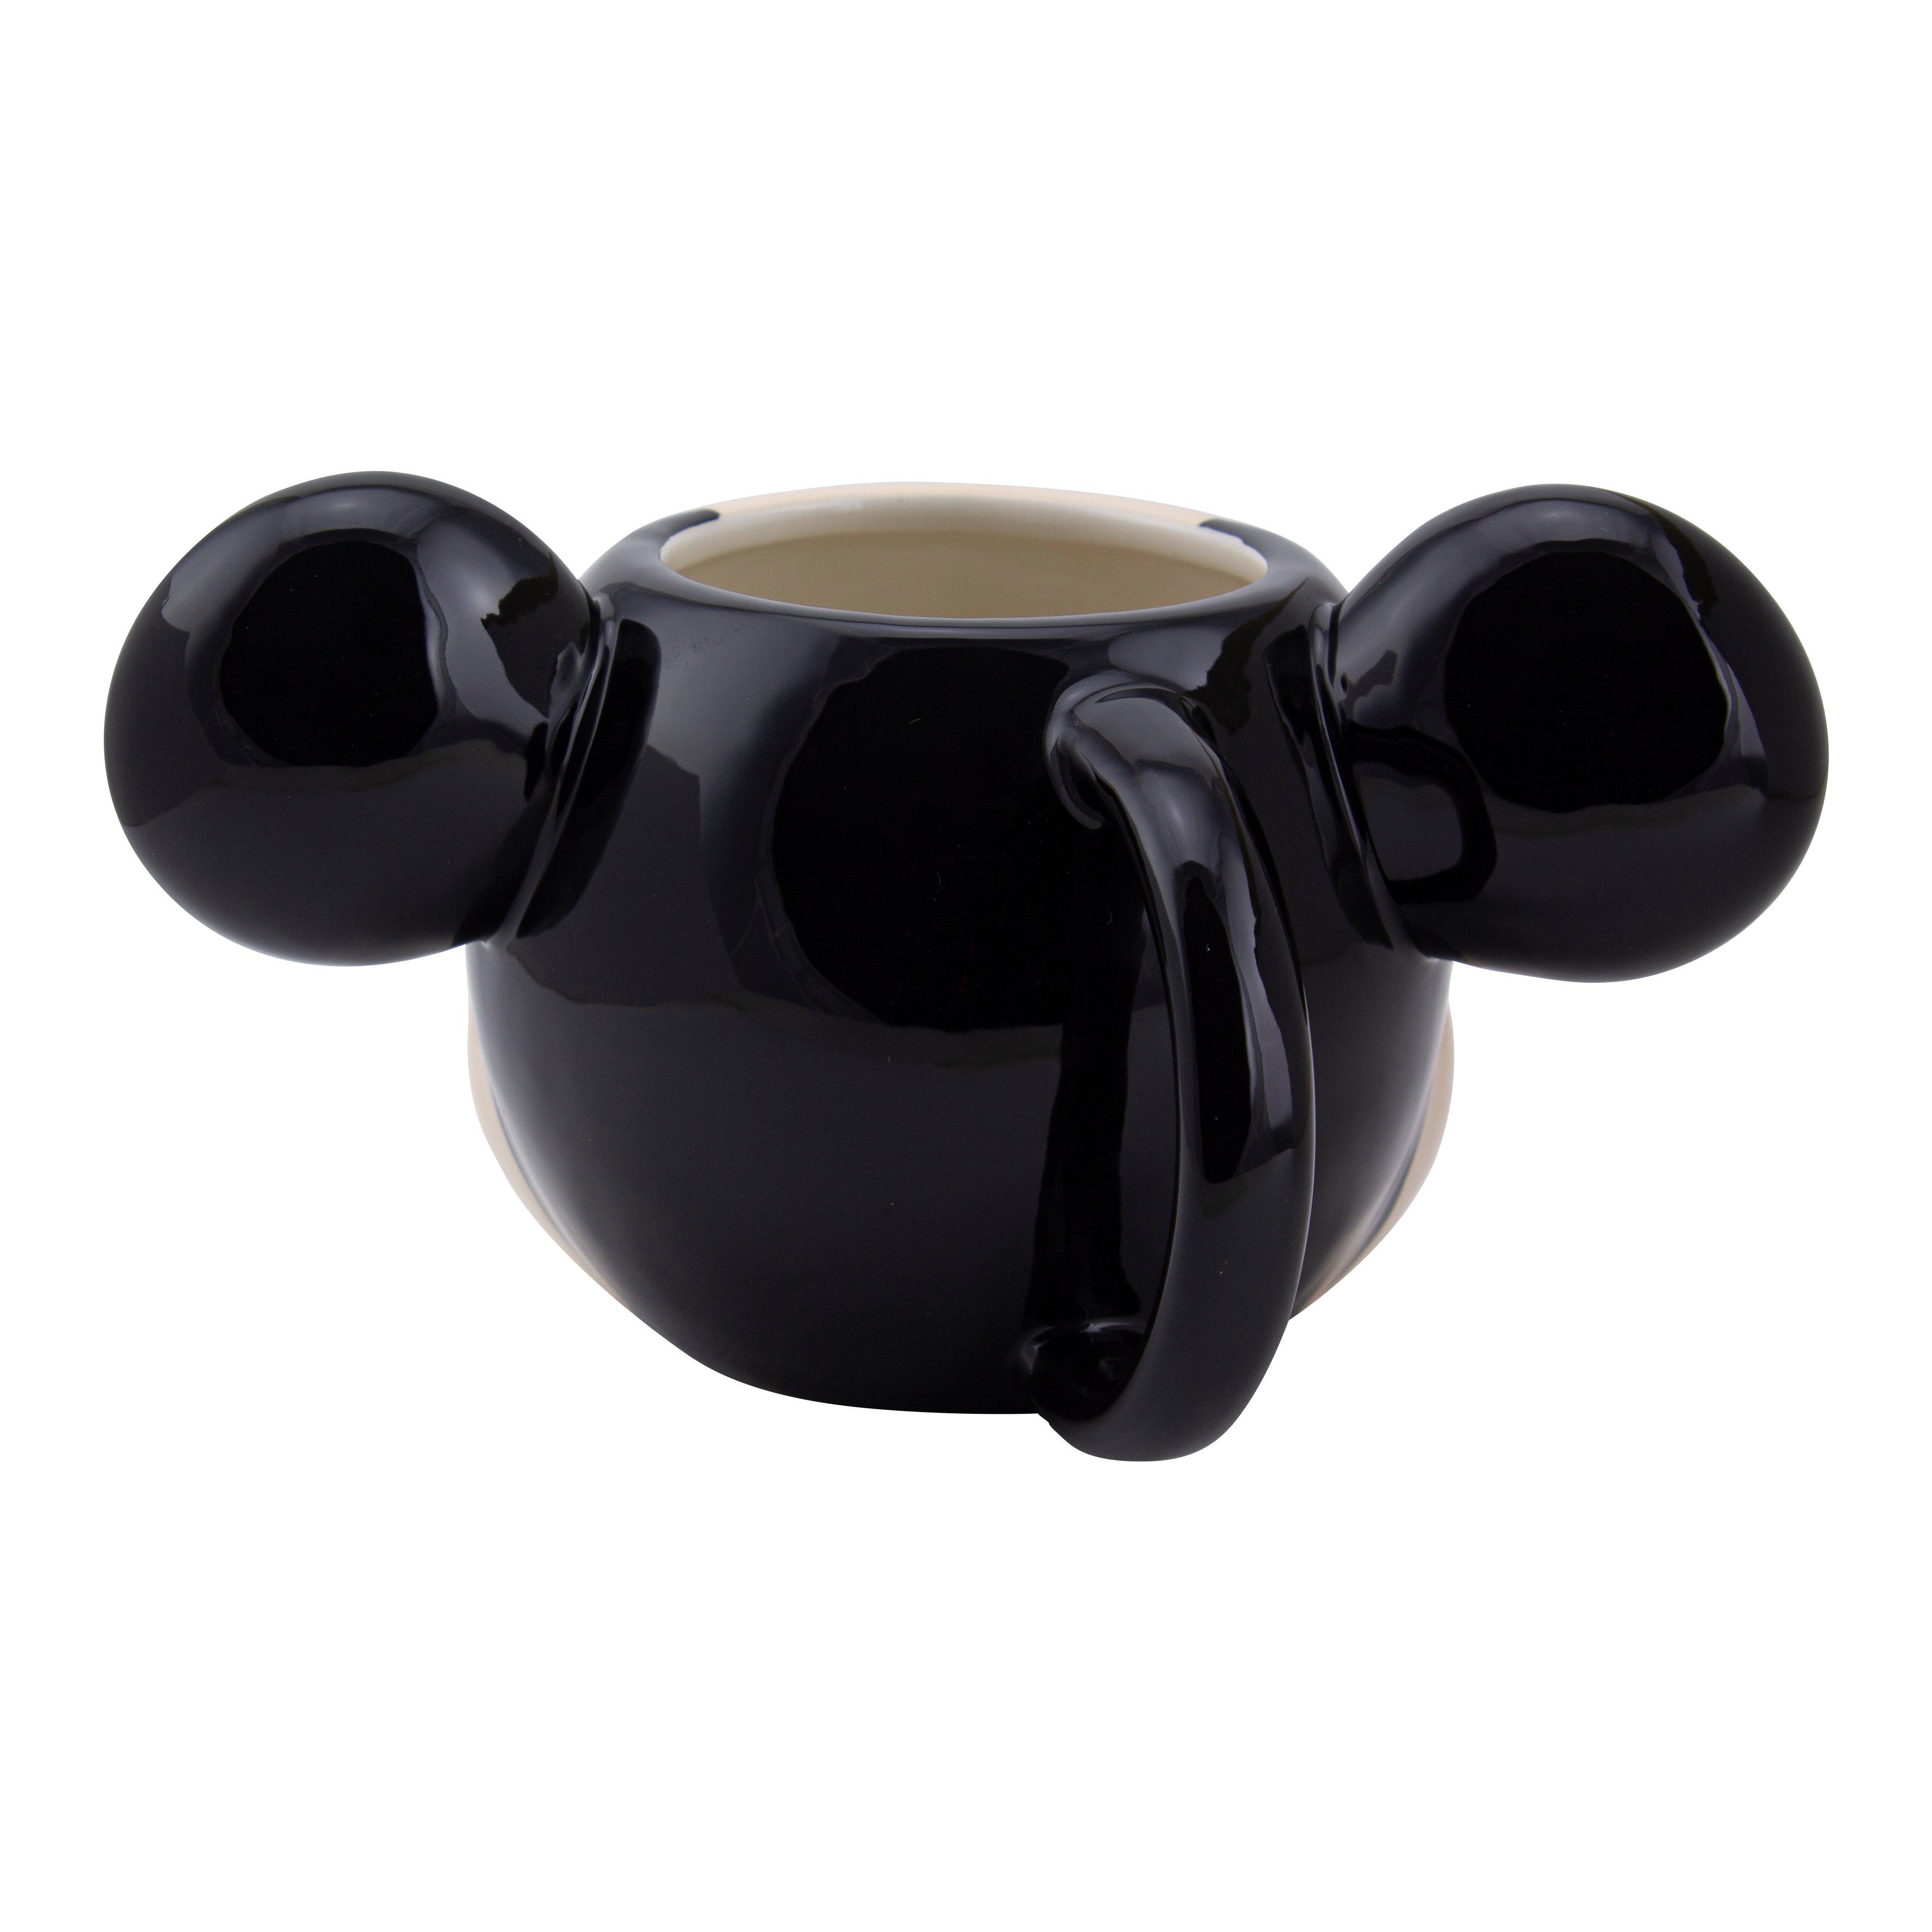 Mickey Mouse Shaped 13oz Ceramic Mug